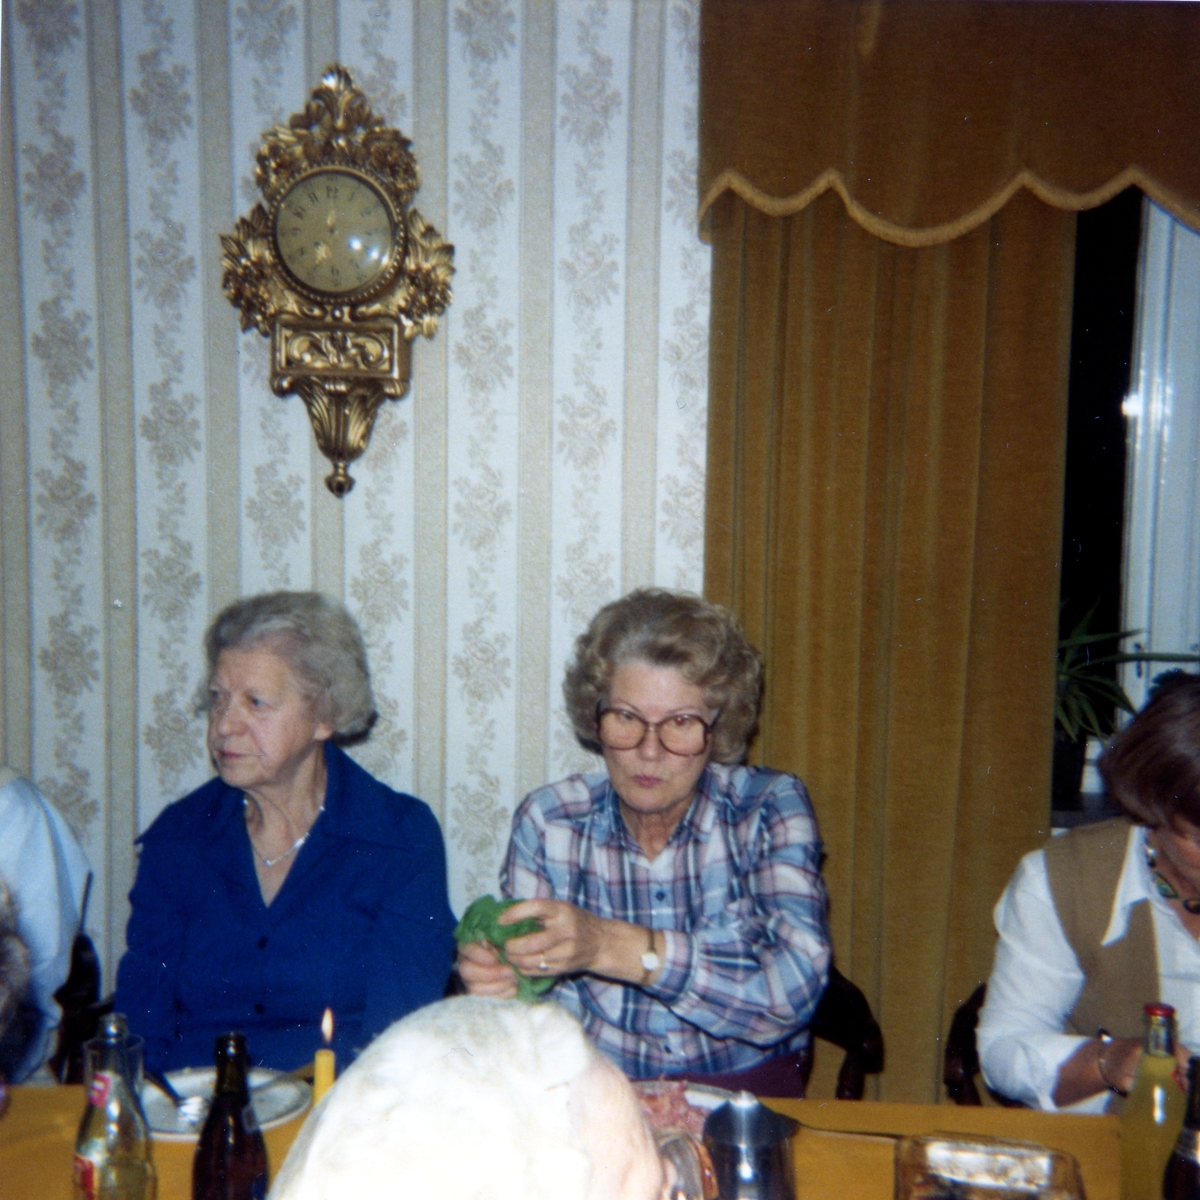 Räkfest för boende och anhöriga i Brattåshemmets matsal (Brattåsvägen 6) 1980-10-16. Tre kvinnor sitter till bords. I bakgrunden hänger en väggpendyl.